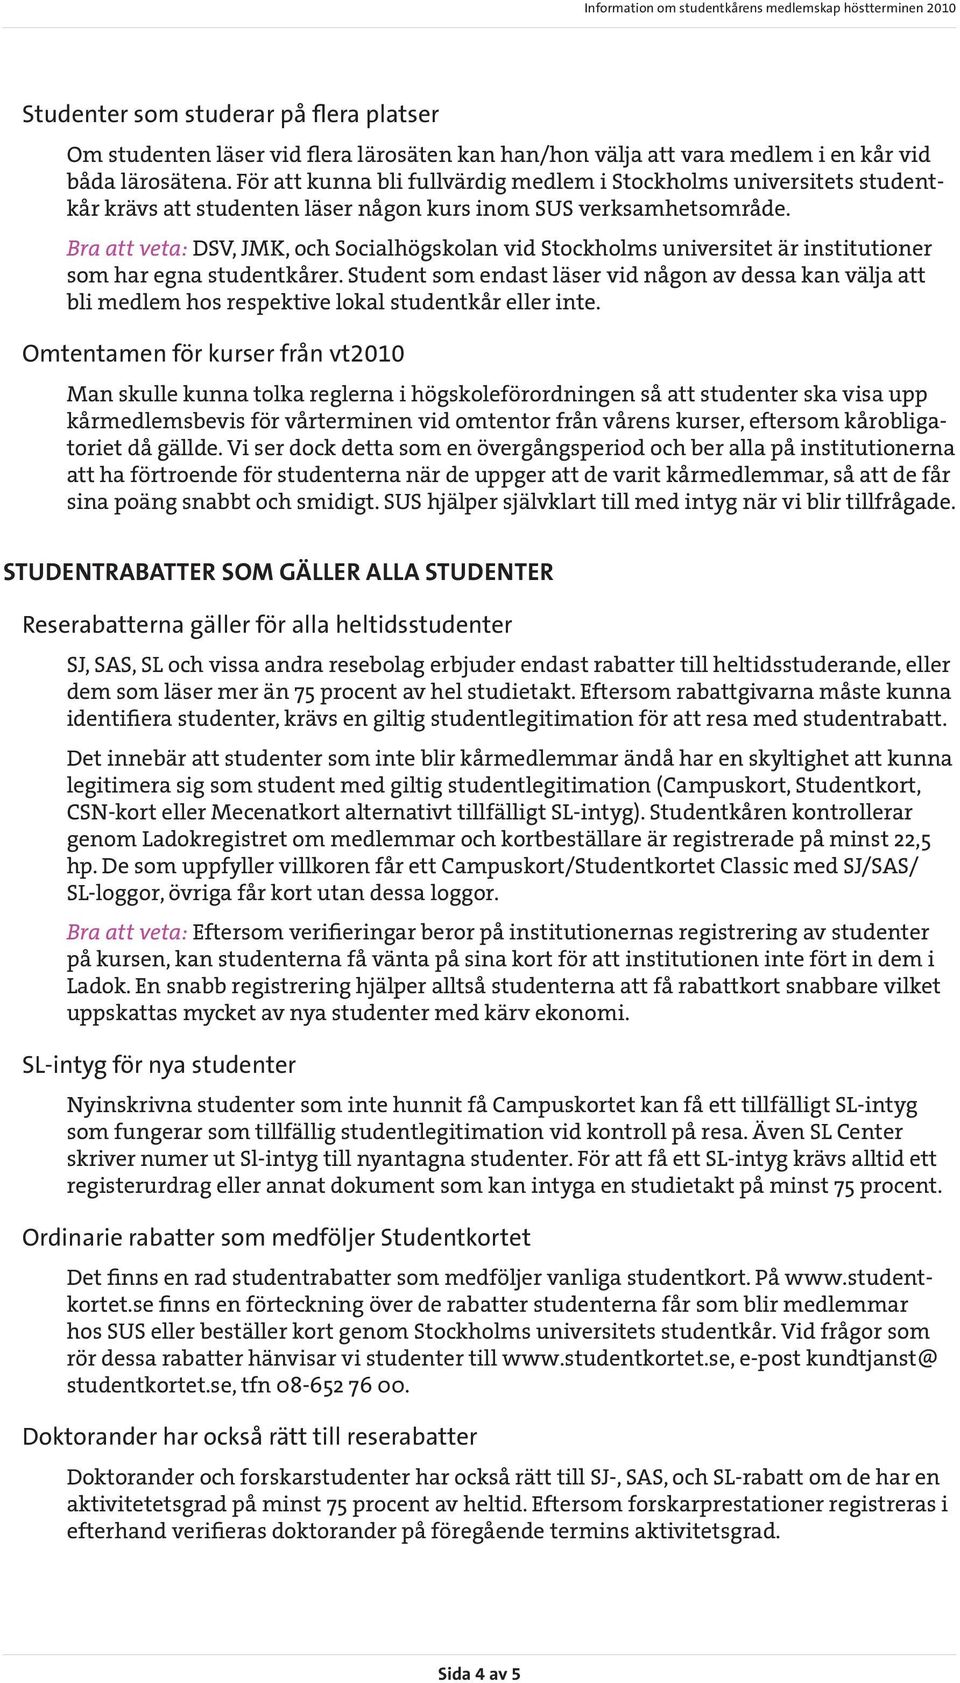 Bra att veta: DSV, JMK, och Socialhögskolan vid Stockholms universitet är institutioner som har egna studentkårer.